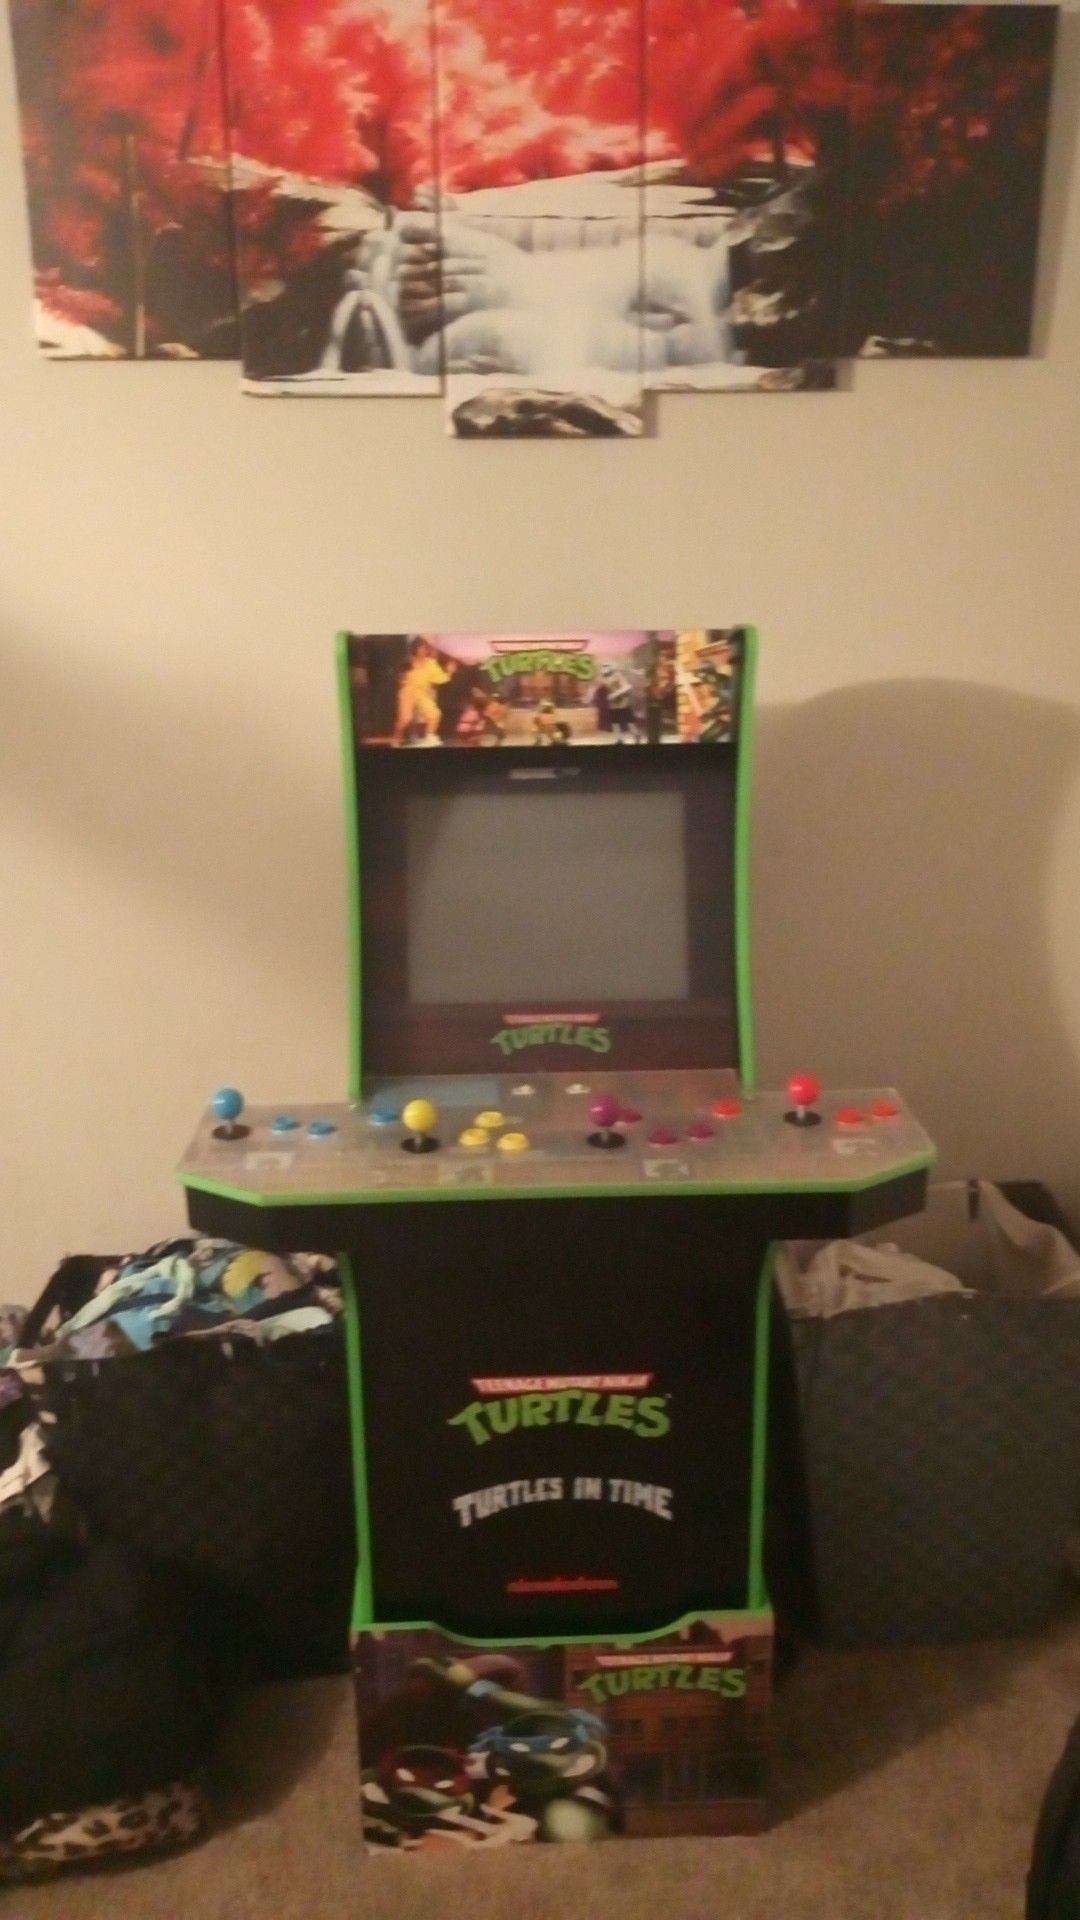 Ninja turtles arcade game